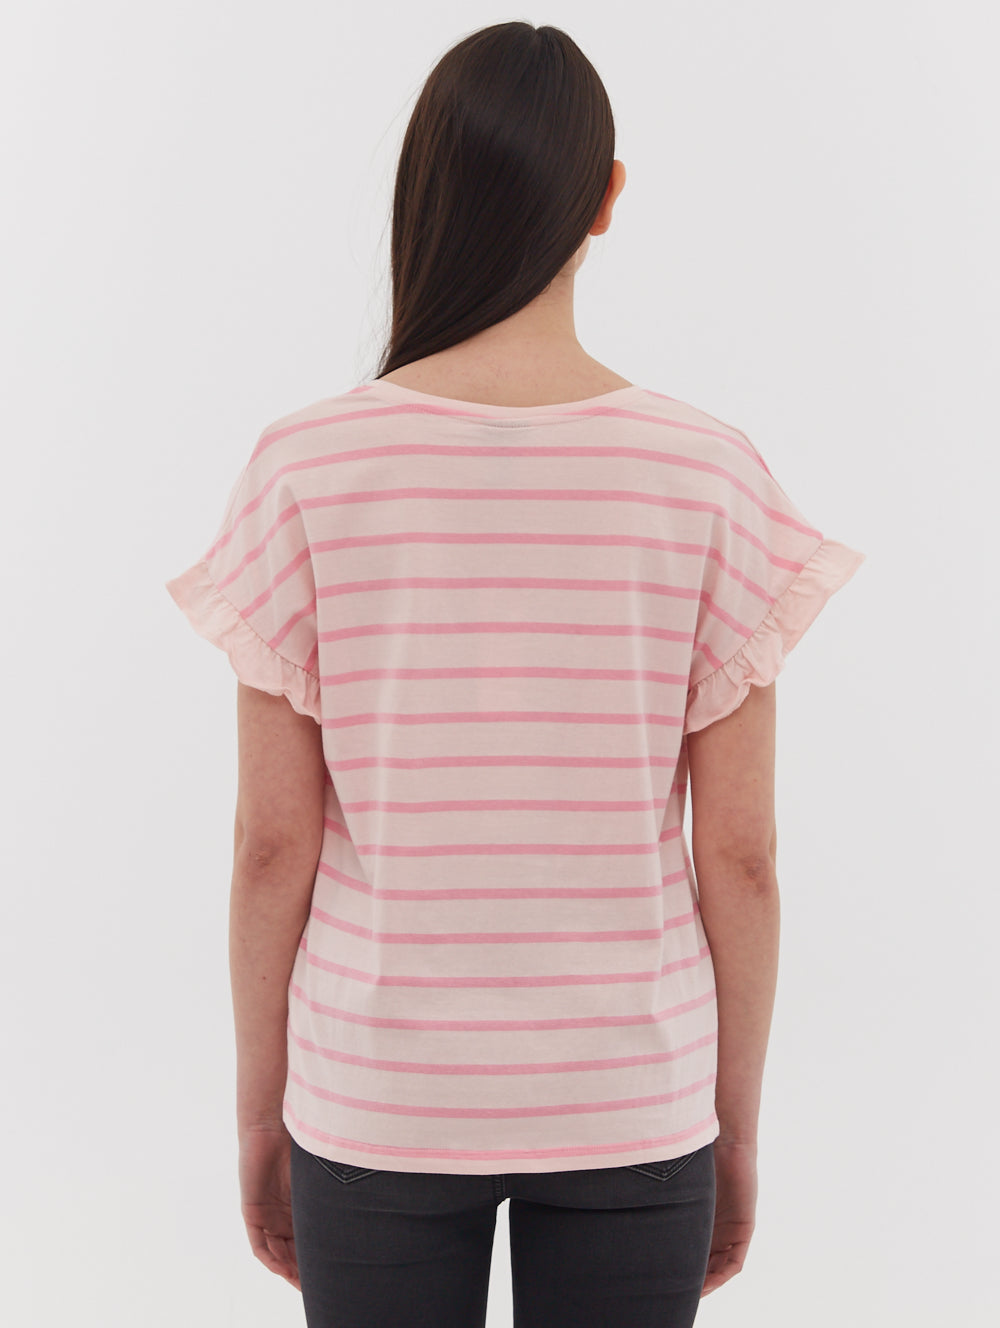 Velmina Ruffle Sleeve T-Shirt - BN4A124489